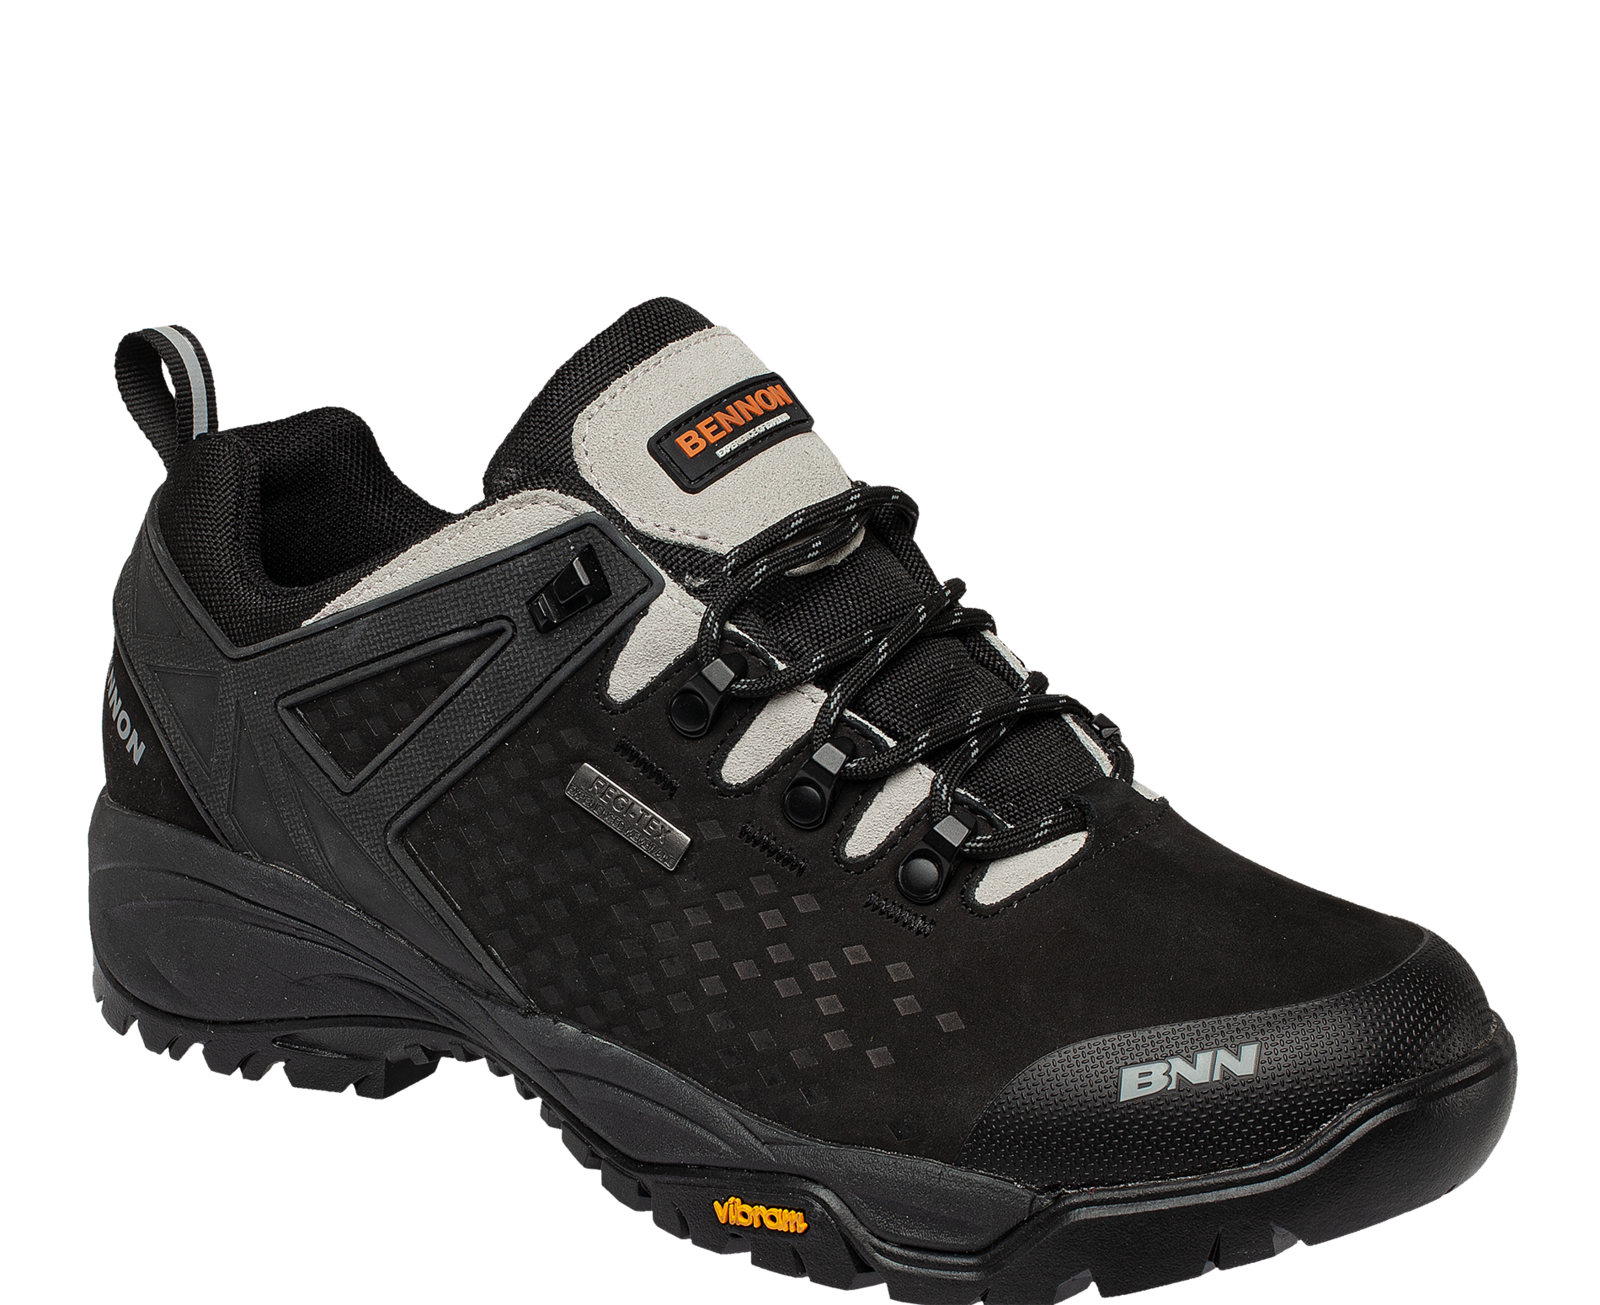 Outdoorová obuv Bennon Recado XTR O2 s membránou - veľkosť: 39, farba: čierna